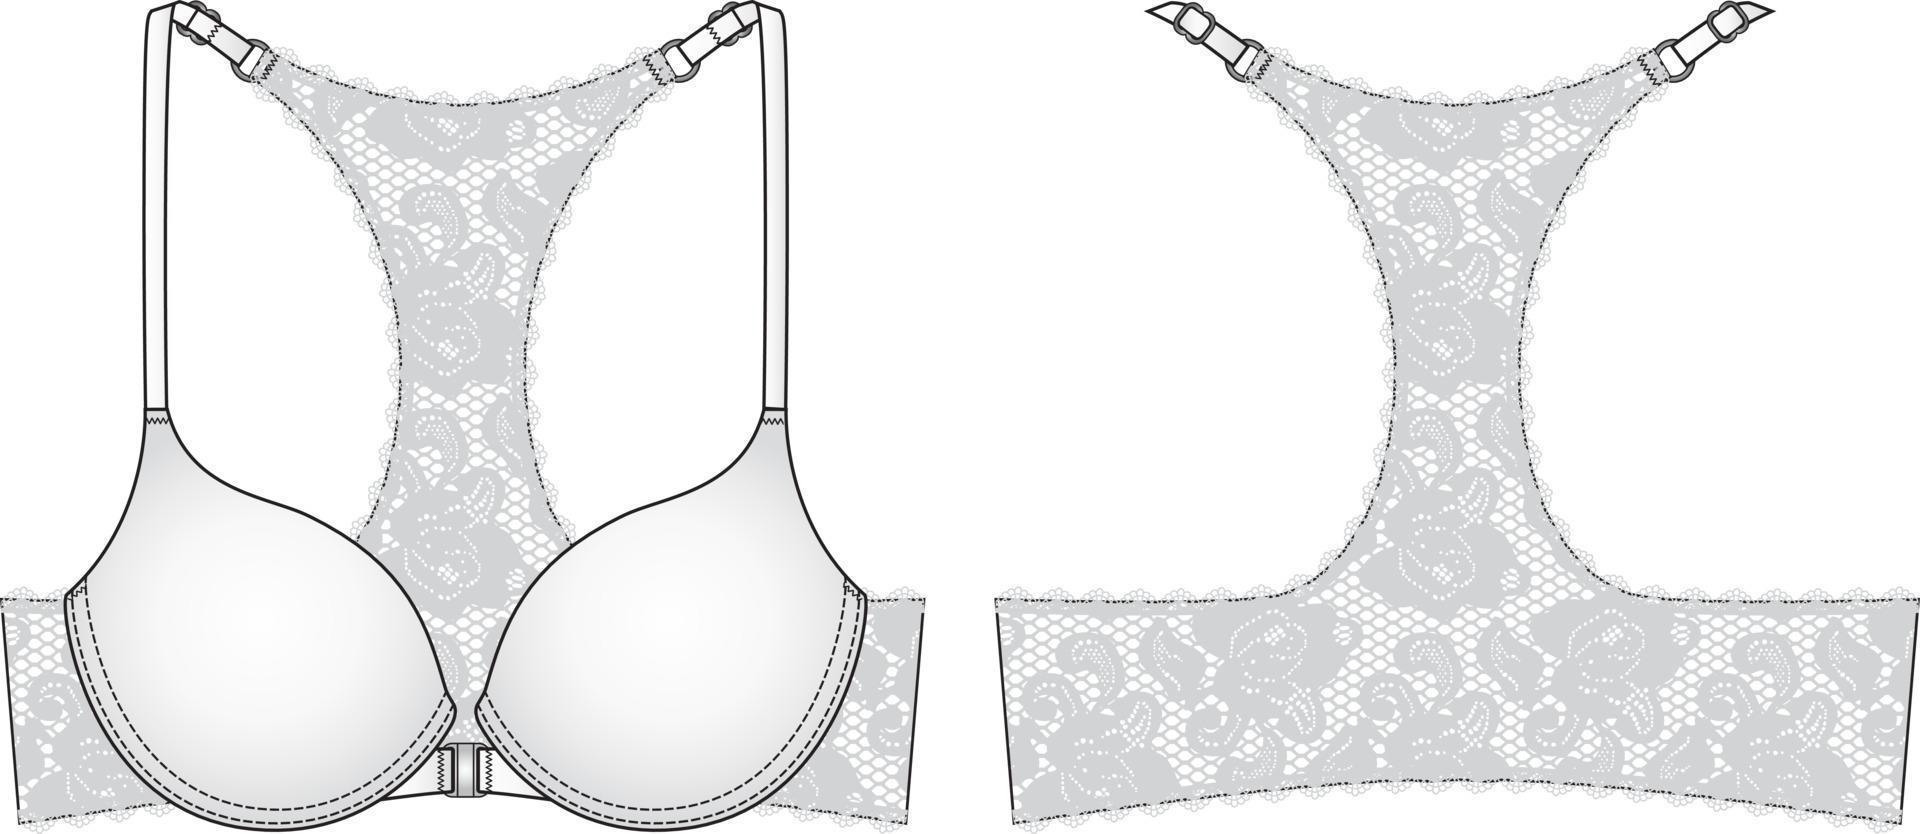 Ilustración técnica de sujetador con espalda de encaje. dibujo plano de lencería editable vector